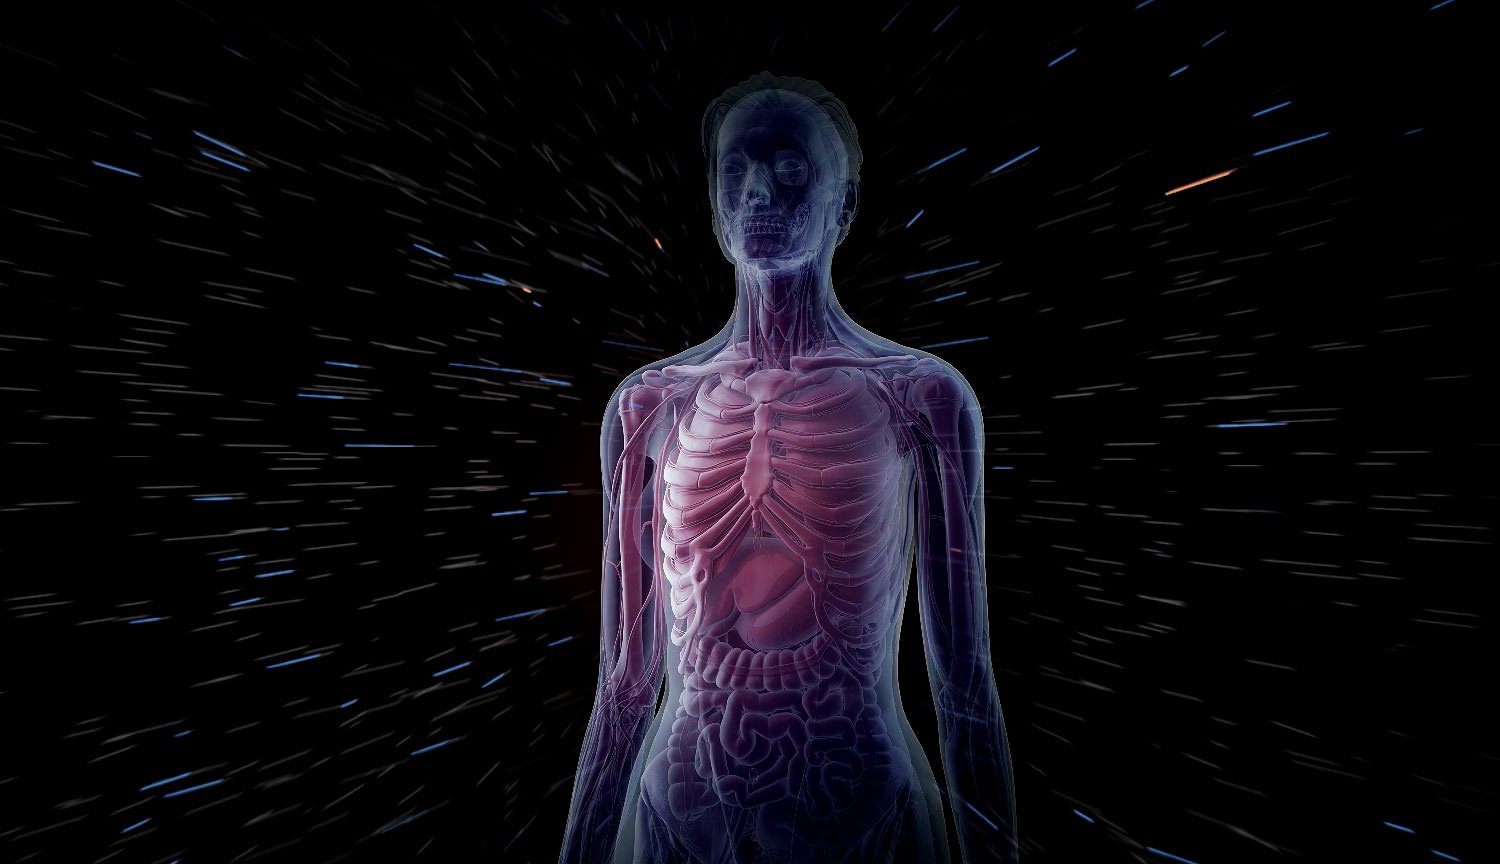 Los investigadores están desarrollando más detallado modelo en 3D del cuerpo humano